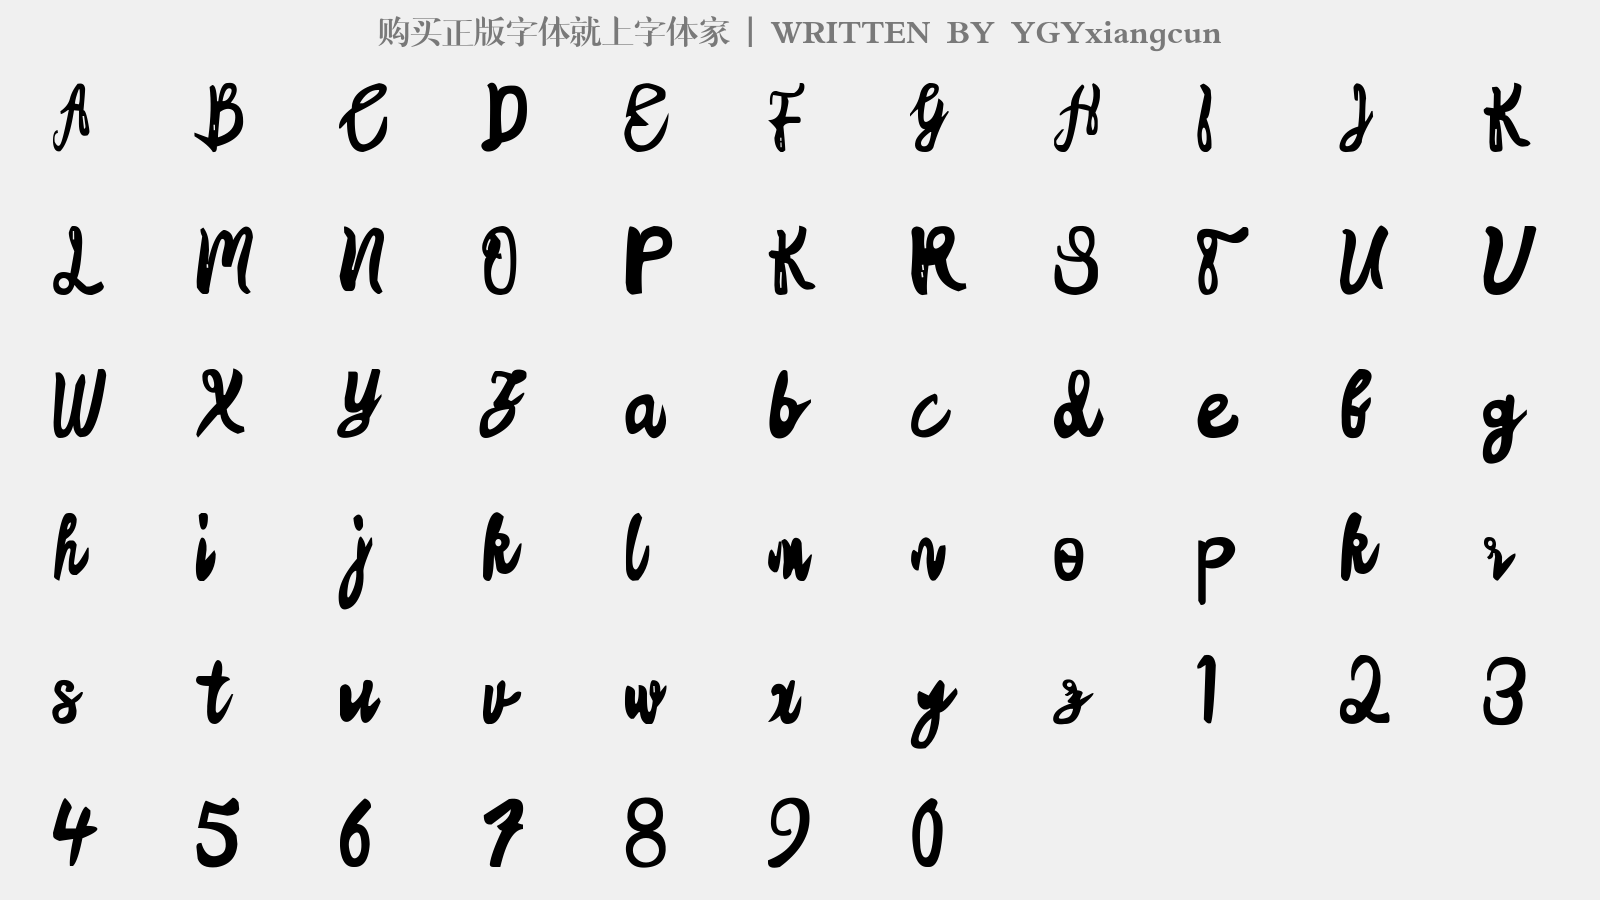 YGYxiangcun - 大写字母/小写字母/数字